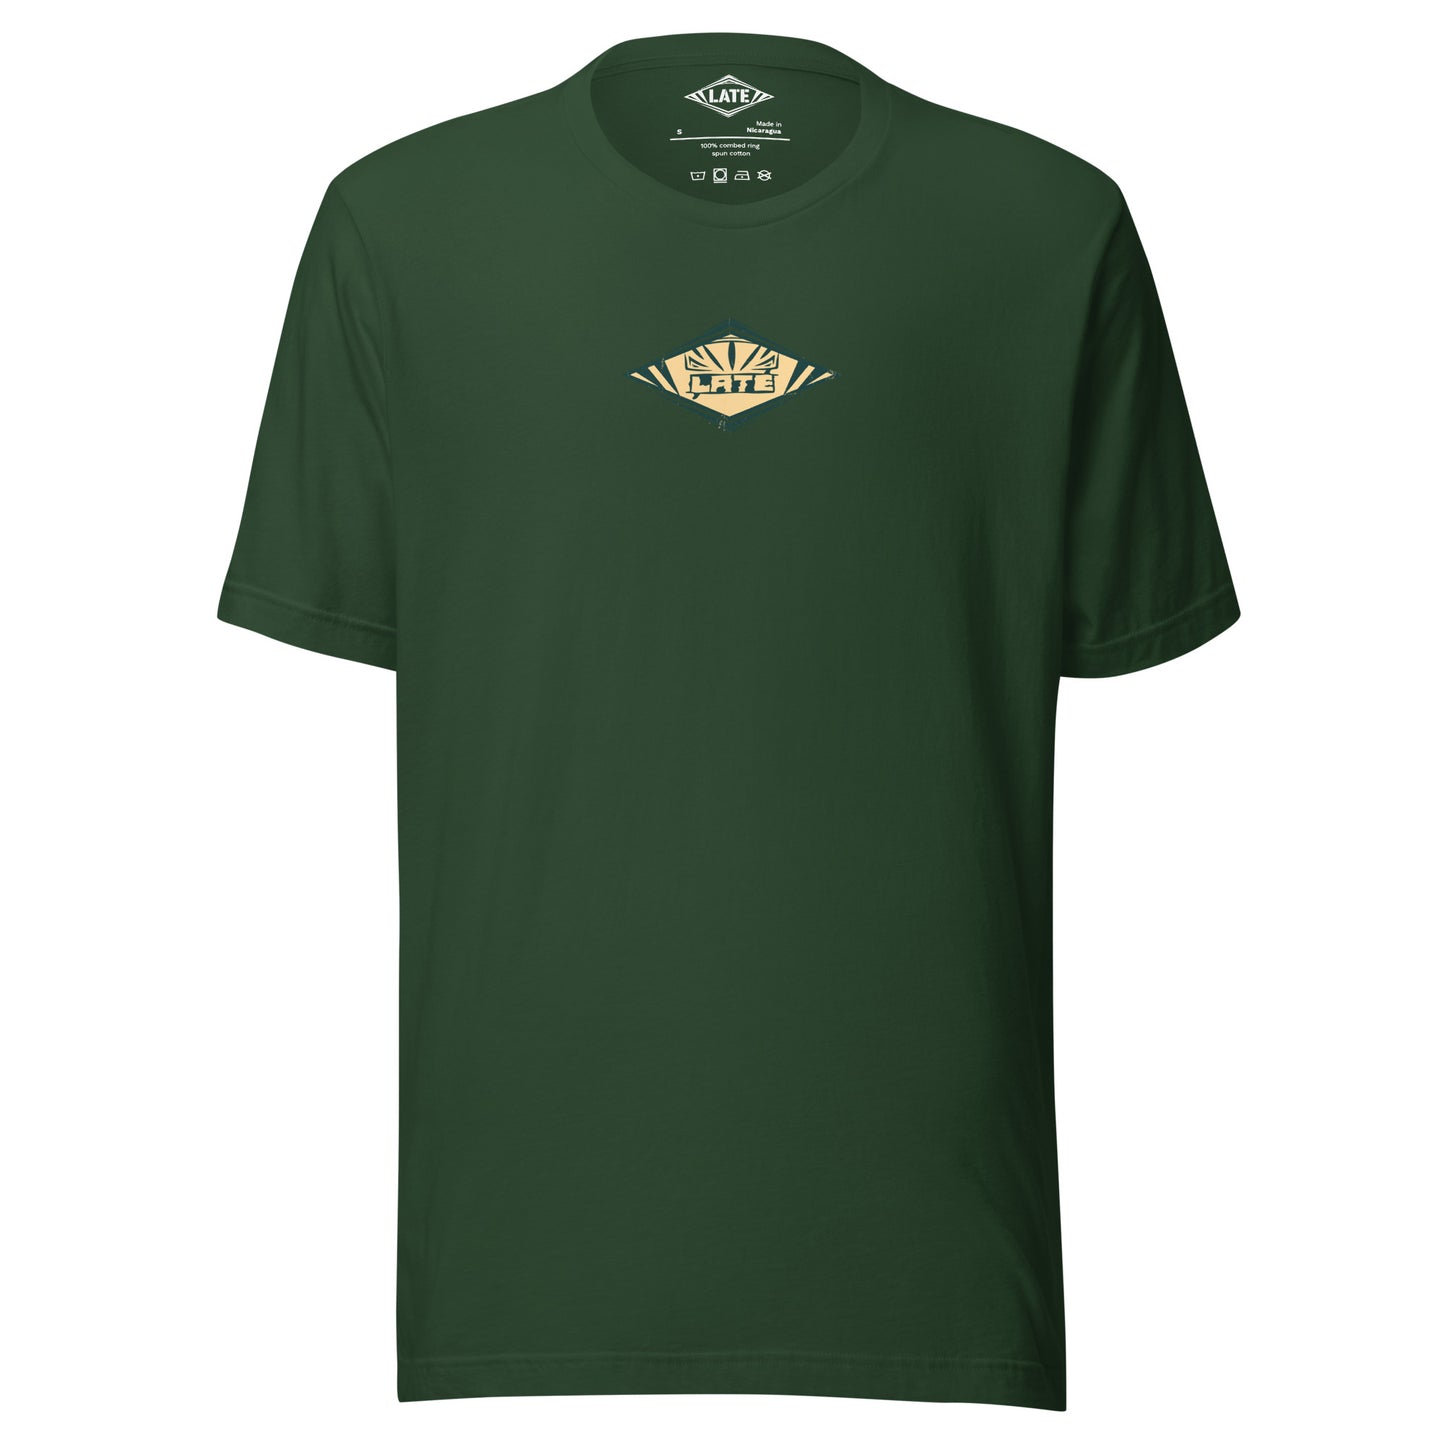 T-Shirt rétro Radical Wave, inspiration maori et vagues des spots mondiaux. Tee shirt unisexe de face vert foret